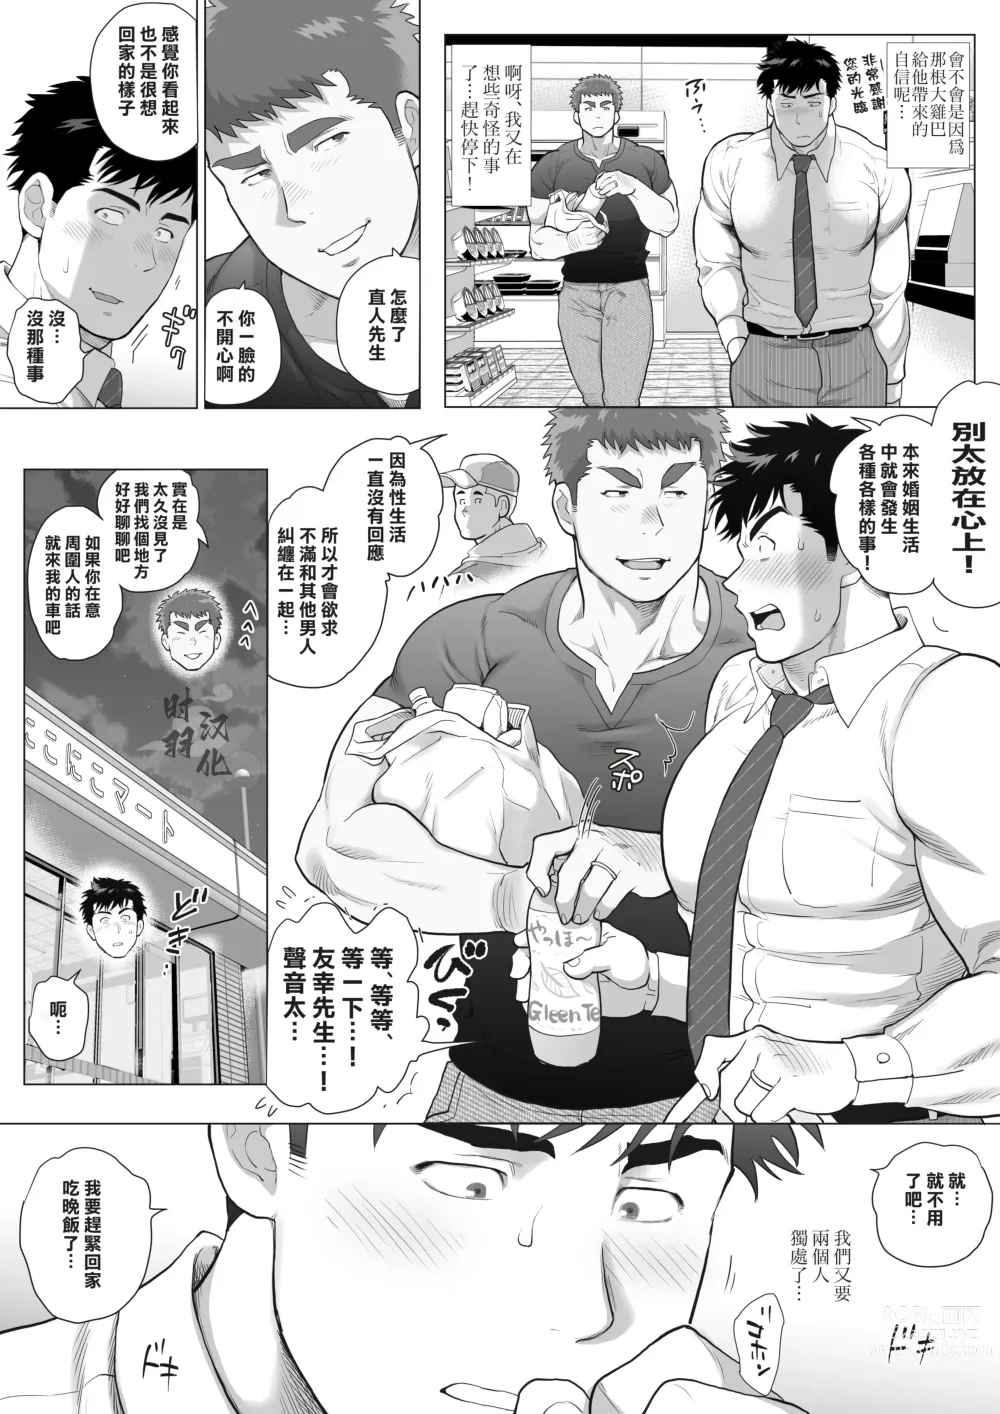 Page 9 of manga 直人爸爸与友幸爸爸 第三话